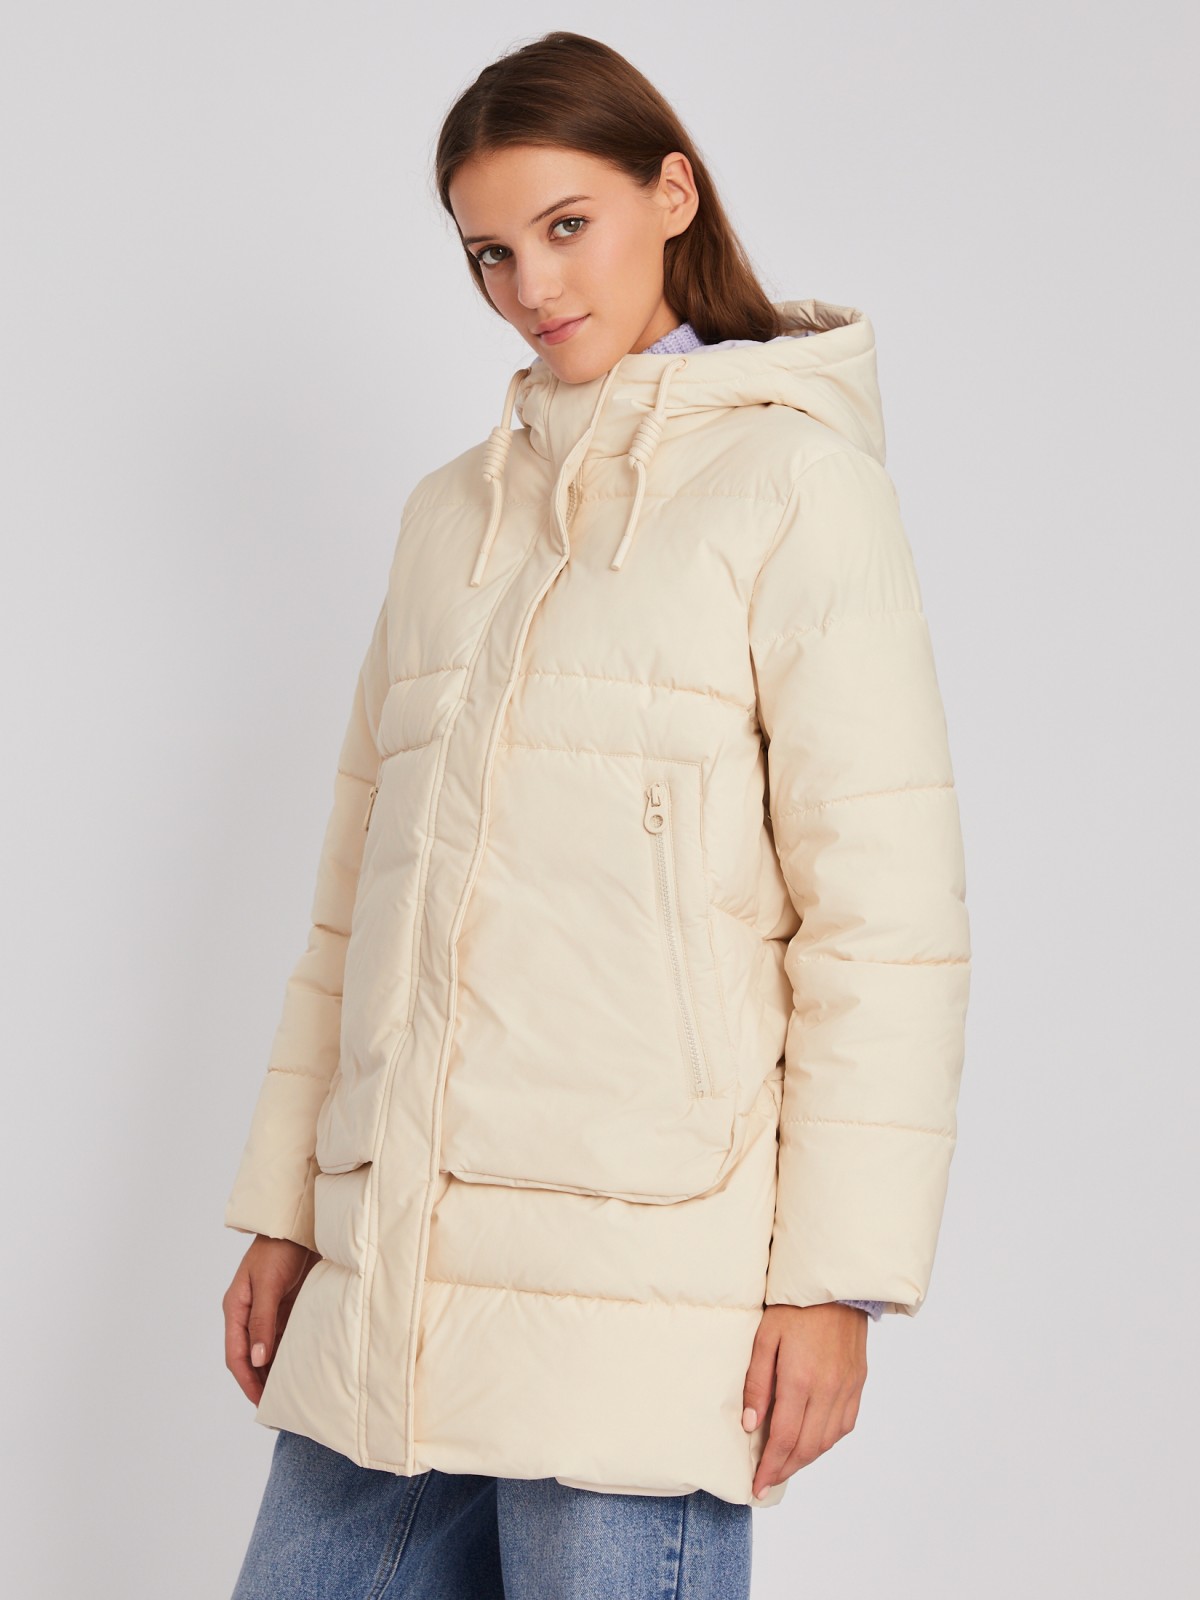 Тёплая стёганая куртка-пальто с капюшоном zolla 023345202114, цвет молоко, размер XS - фото 4